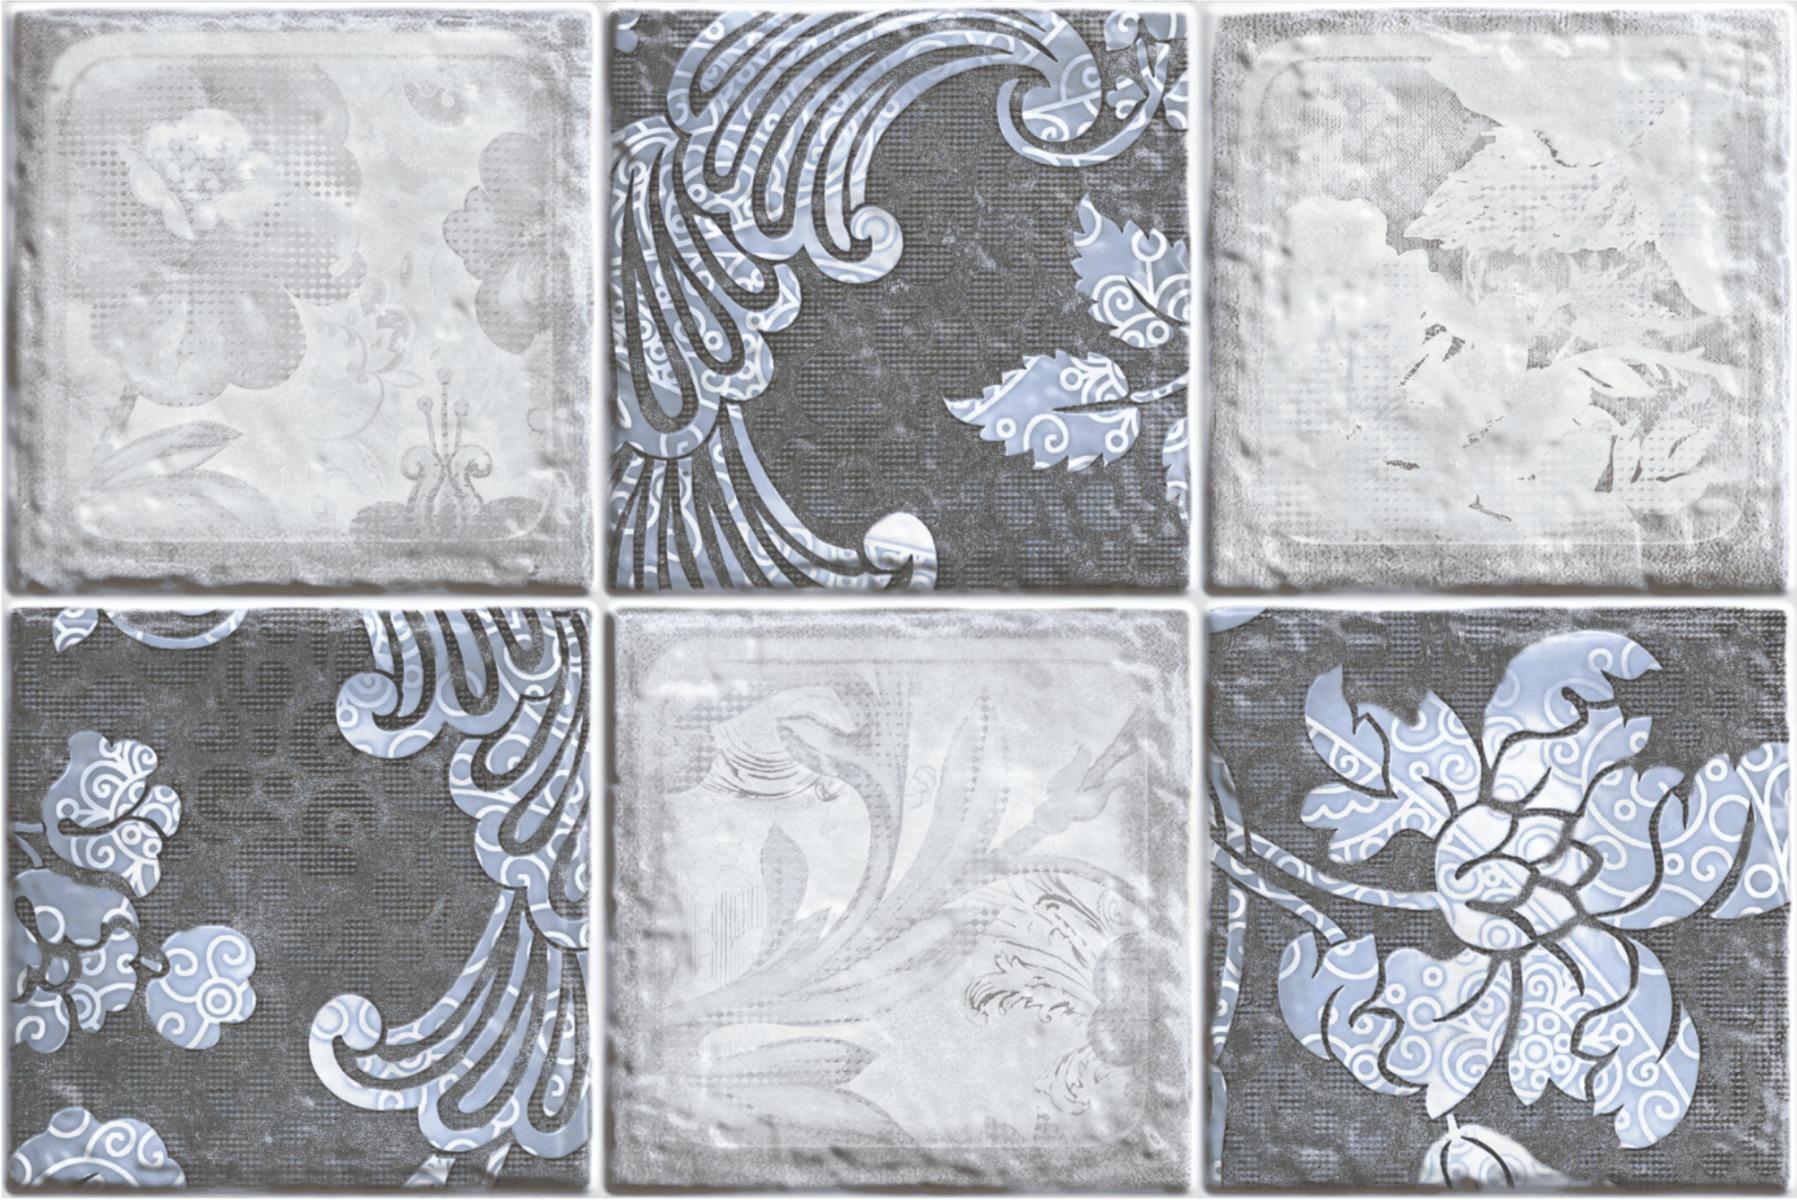 Estilo Tiles Collection for Bathroom Tiles, Kitchen Tiles, Accent Tiles